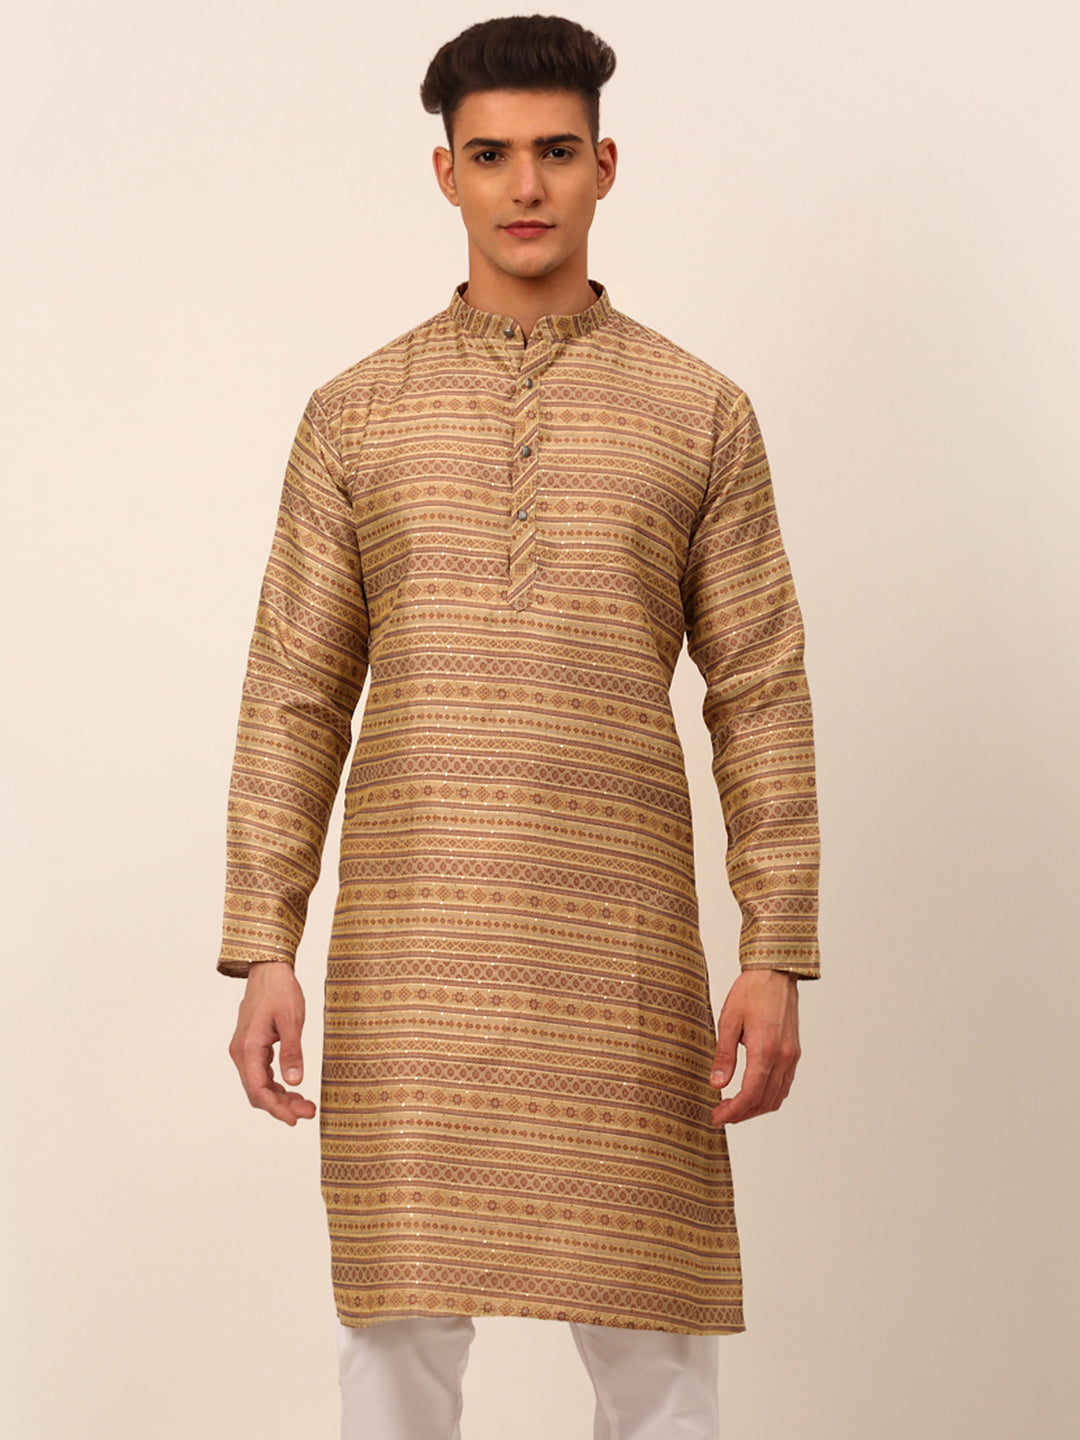 Men's Printed Sequinned Kurta Only ( Ko 668 Brown ) - Virat Fashions